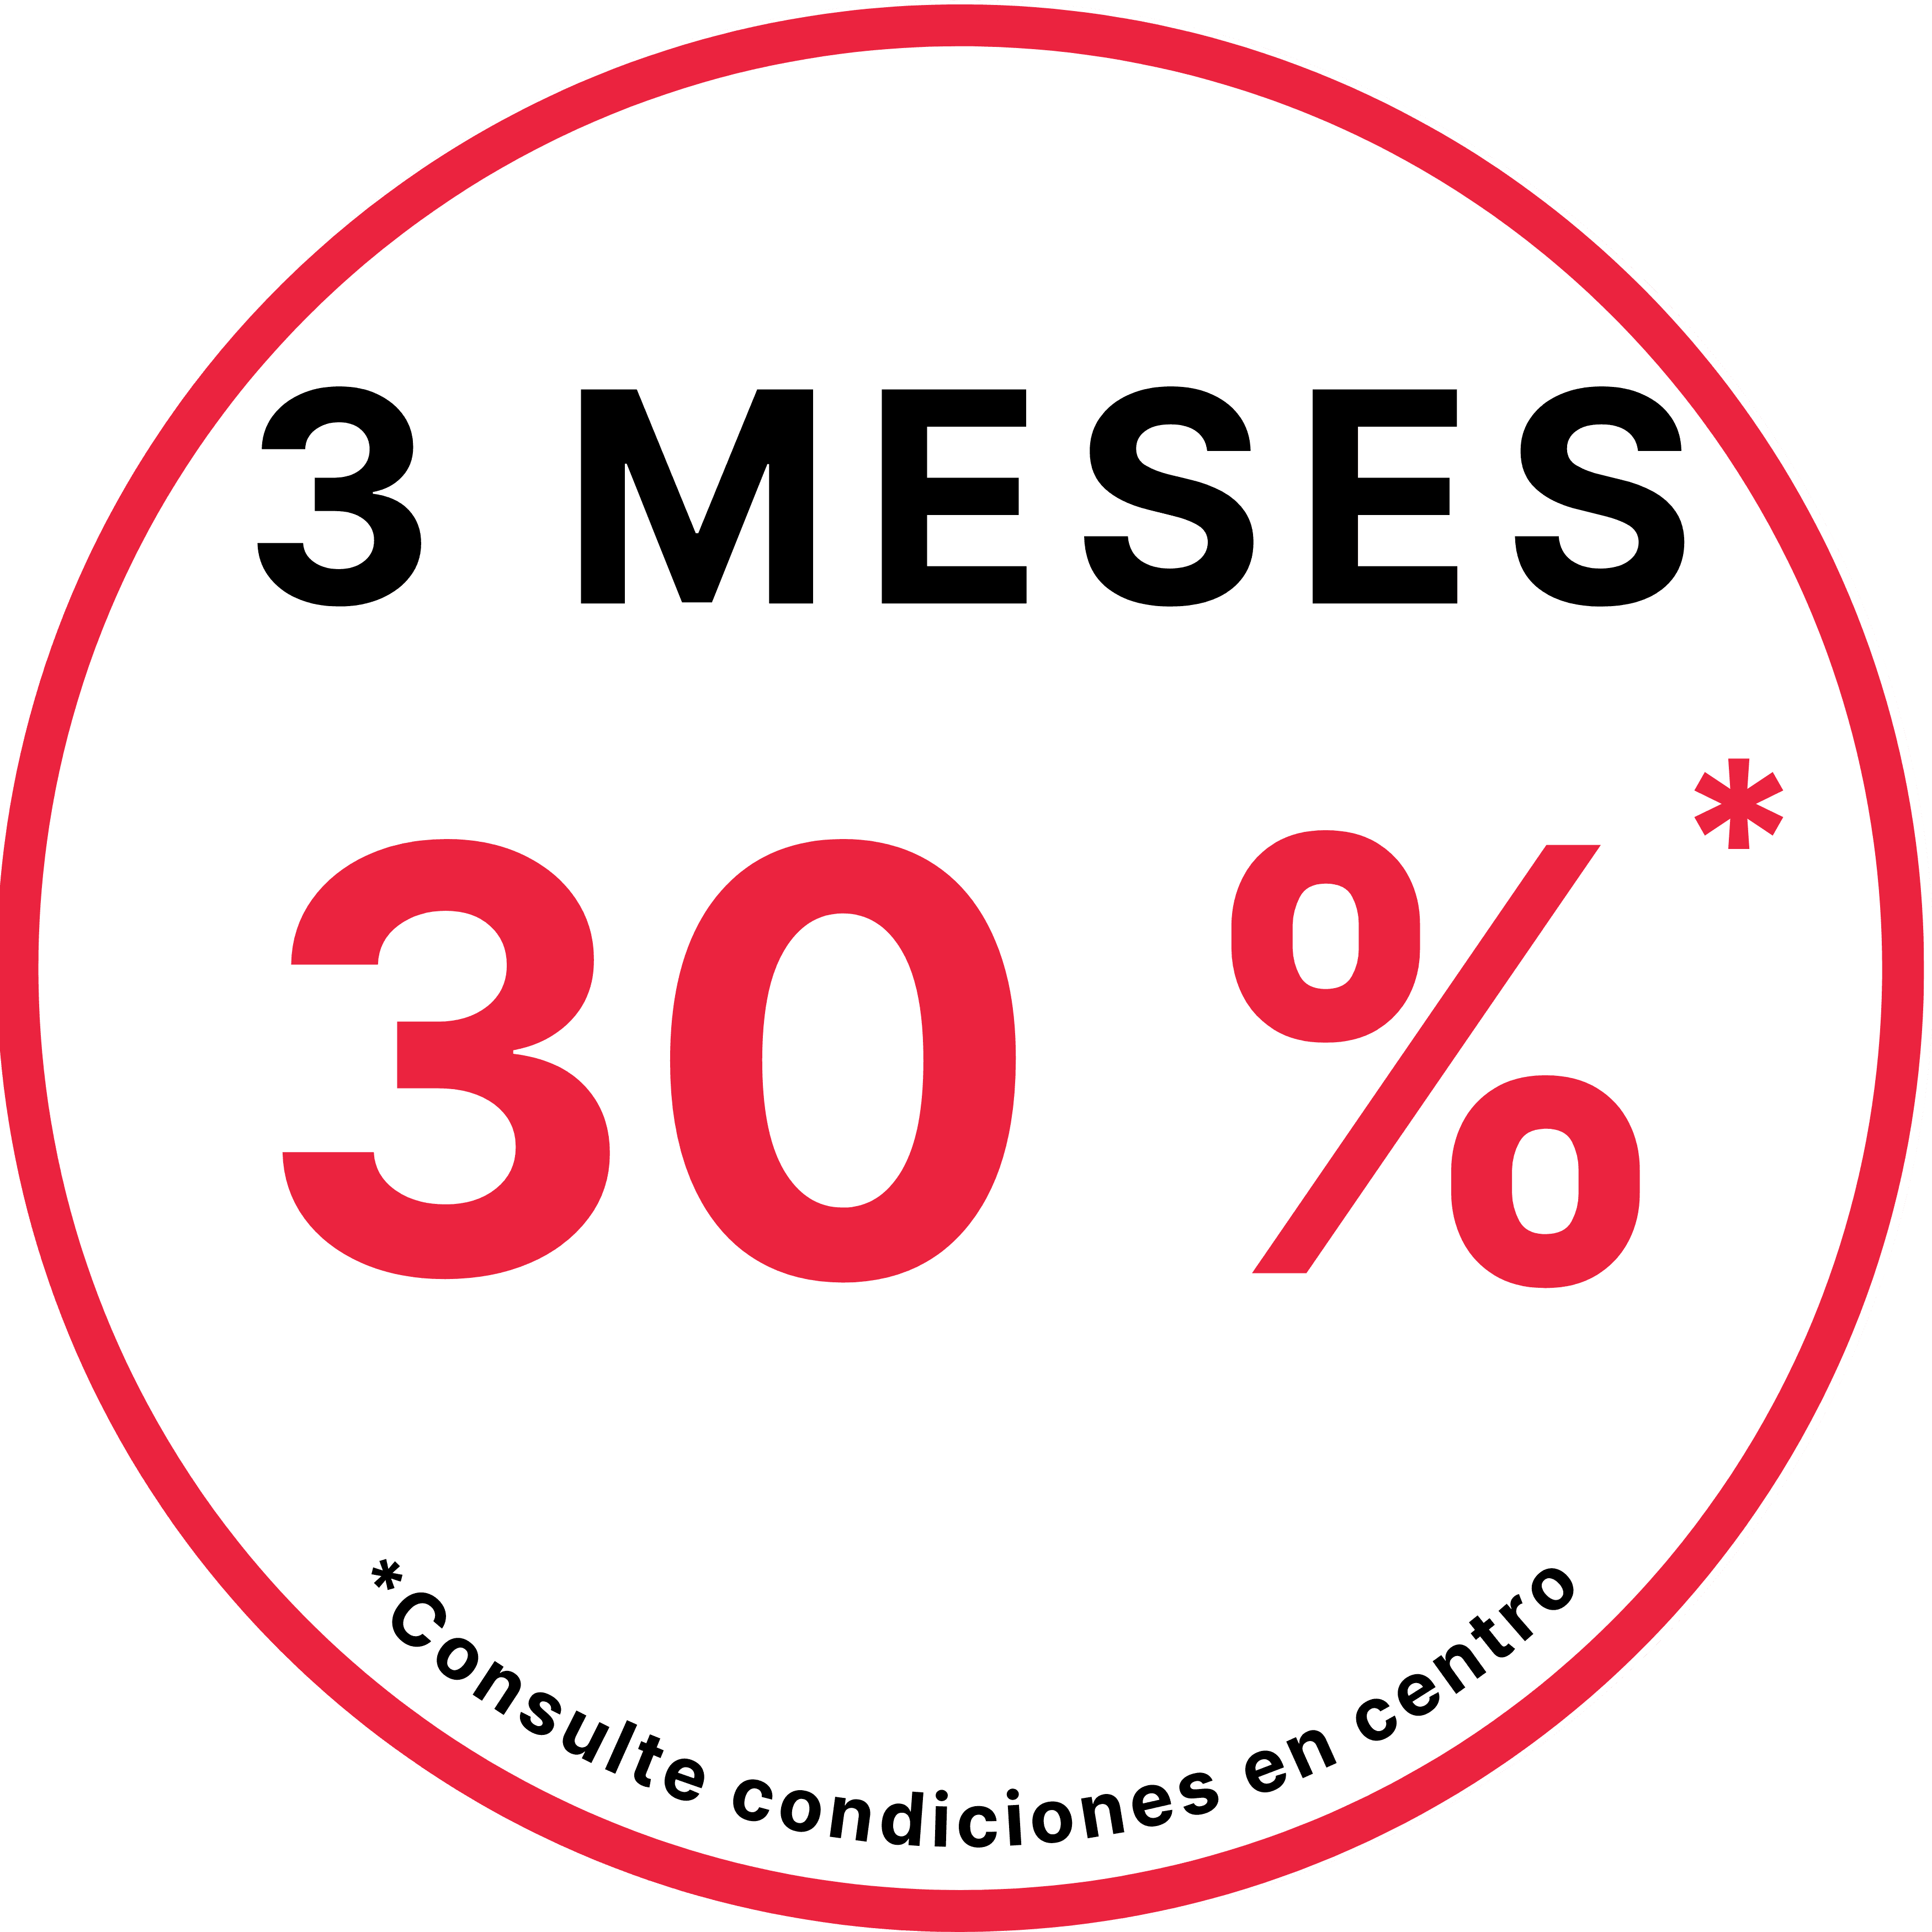 3 MESES 30%